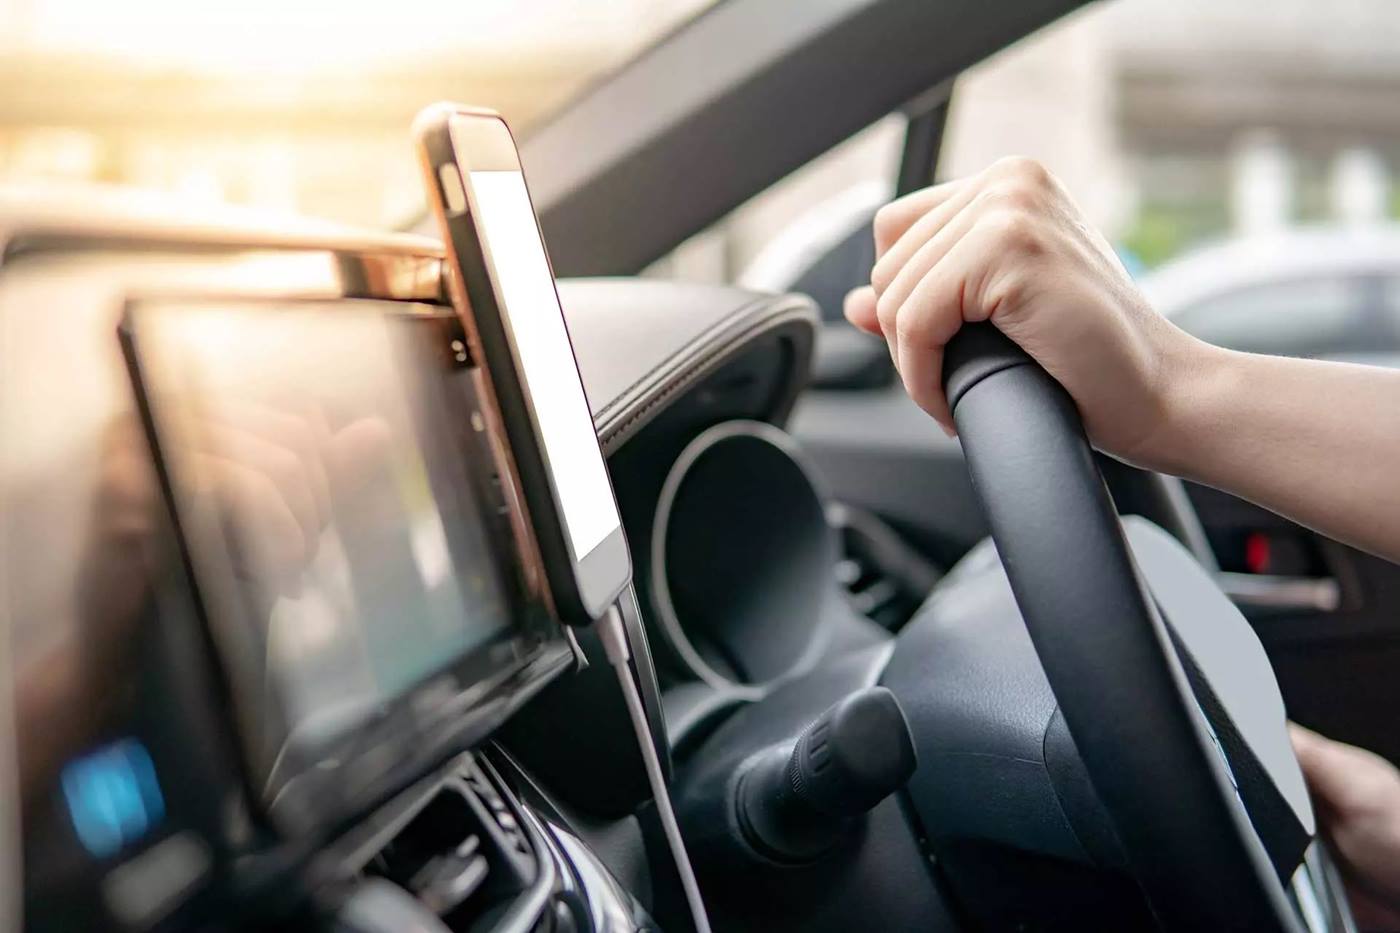 Blick in ein Auto Cockpit: Connected Cars sind längst keine Zukunftsphantasie, sondern Realität